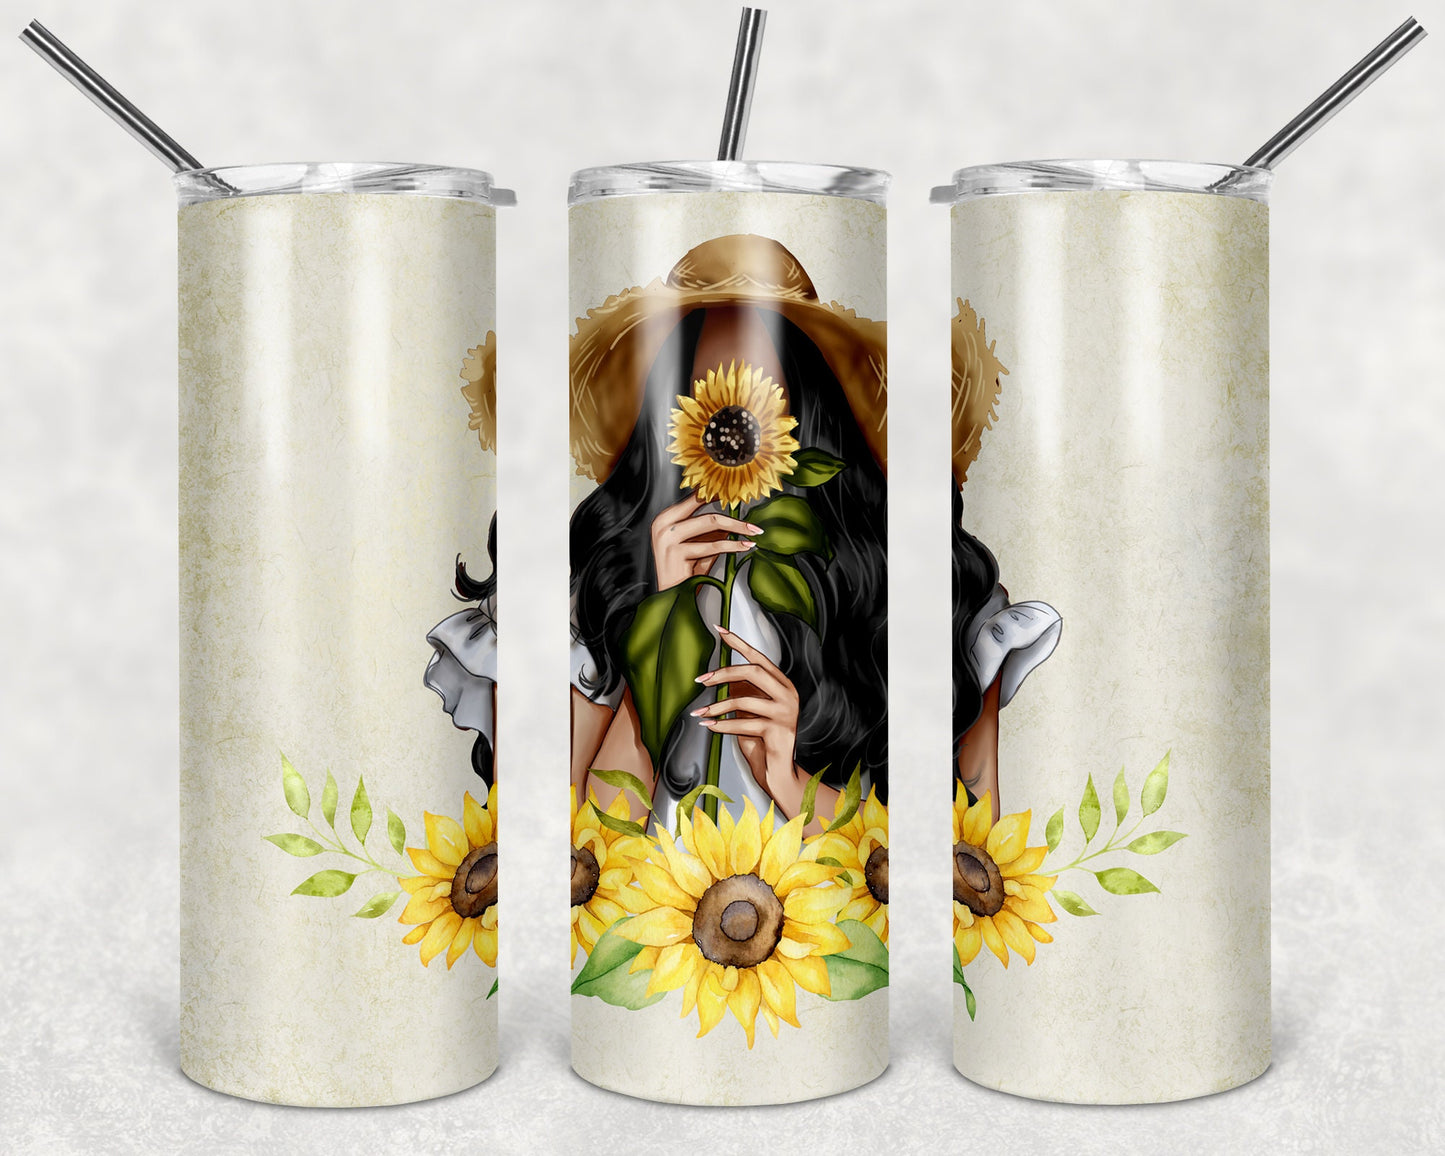 Cute Sunflower Girl Art 20oz Skinny Tumbler - Stainless Steel